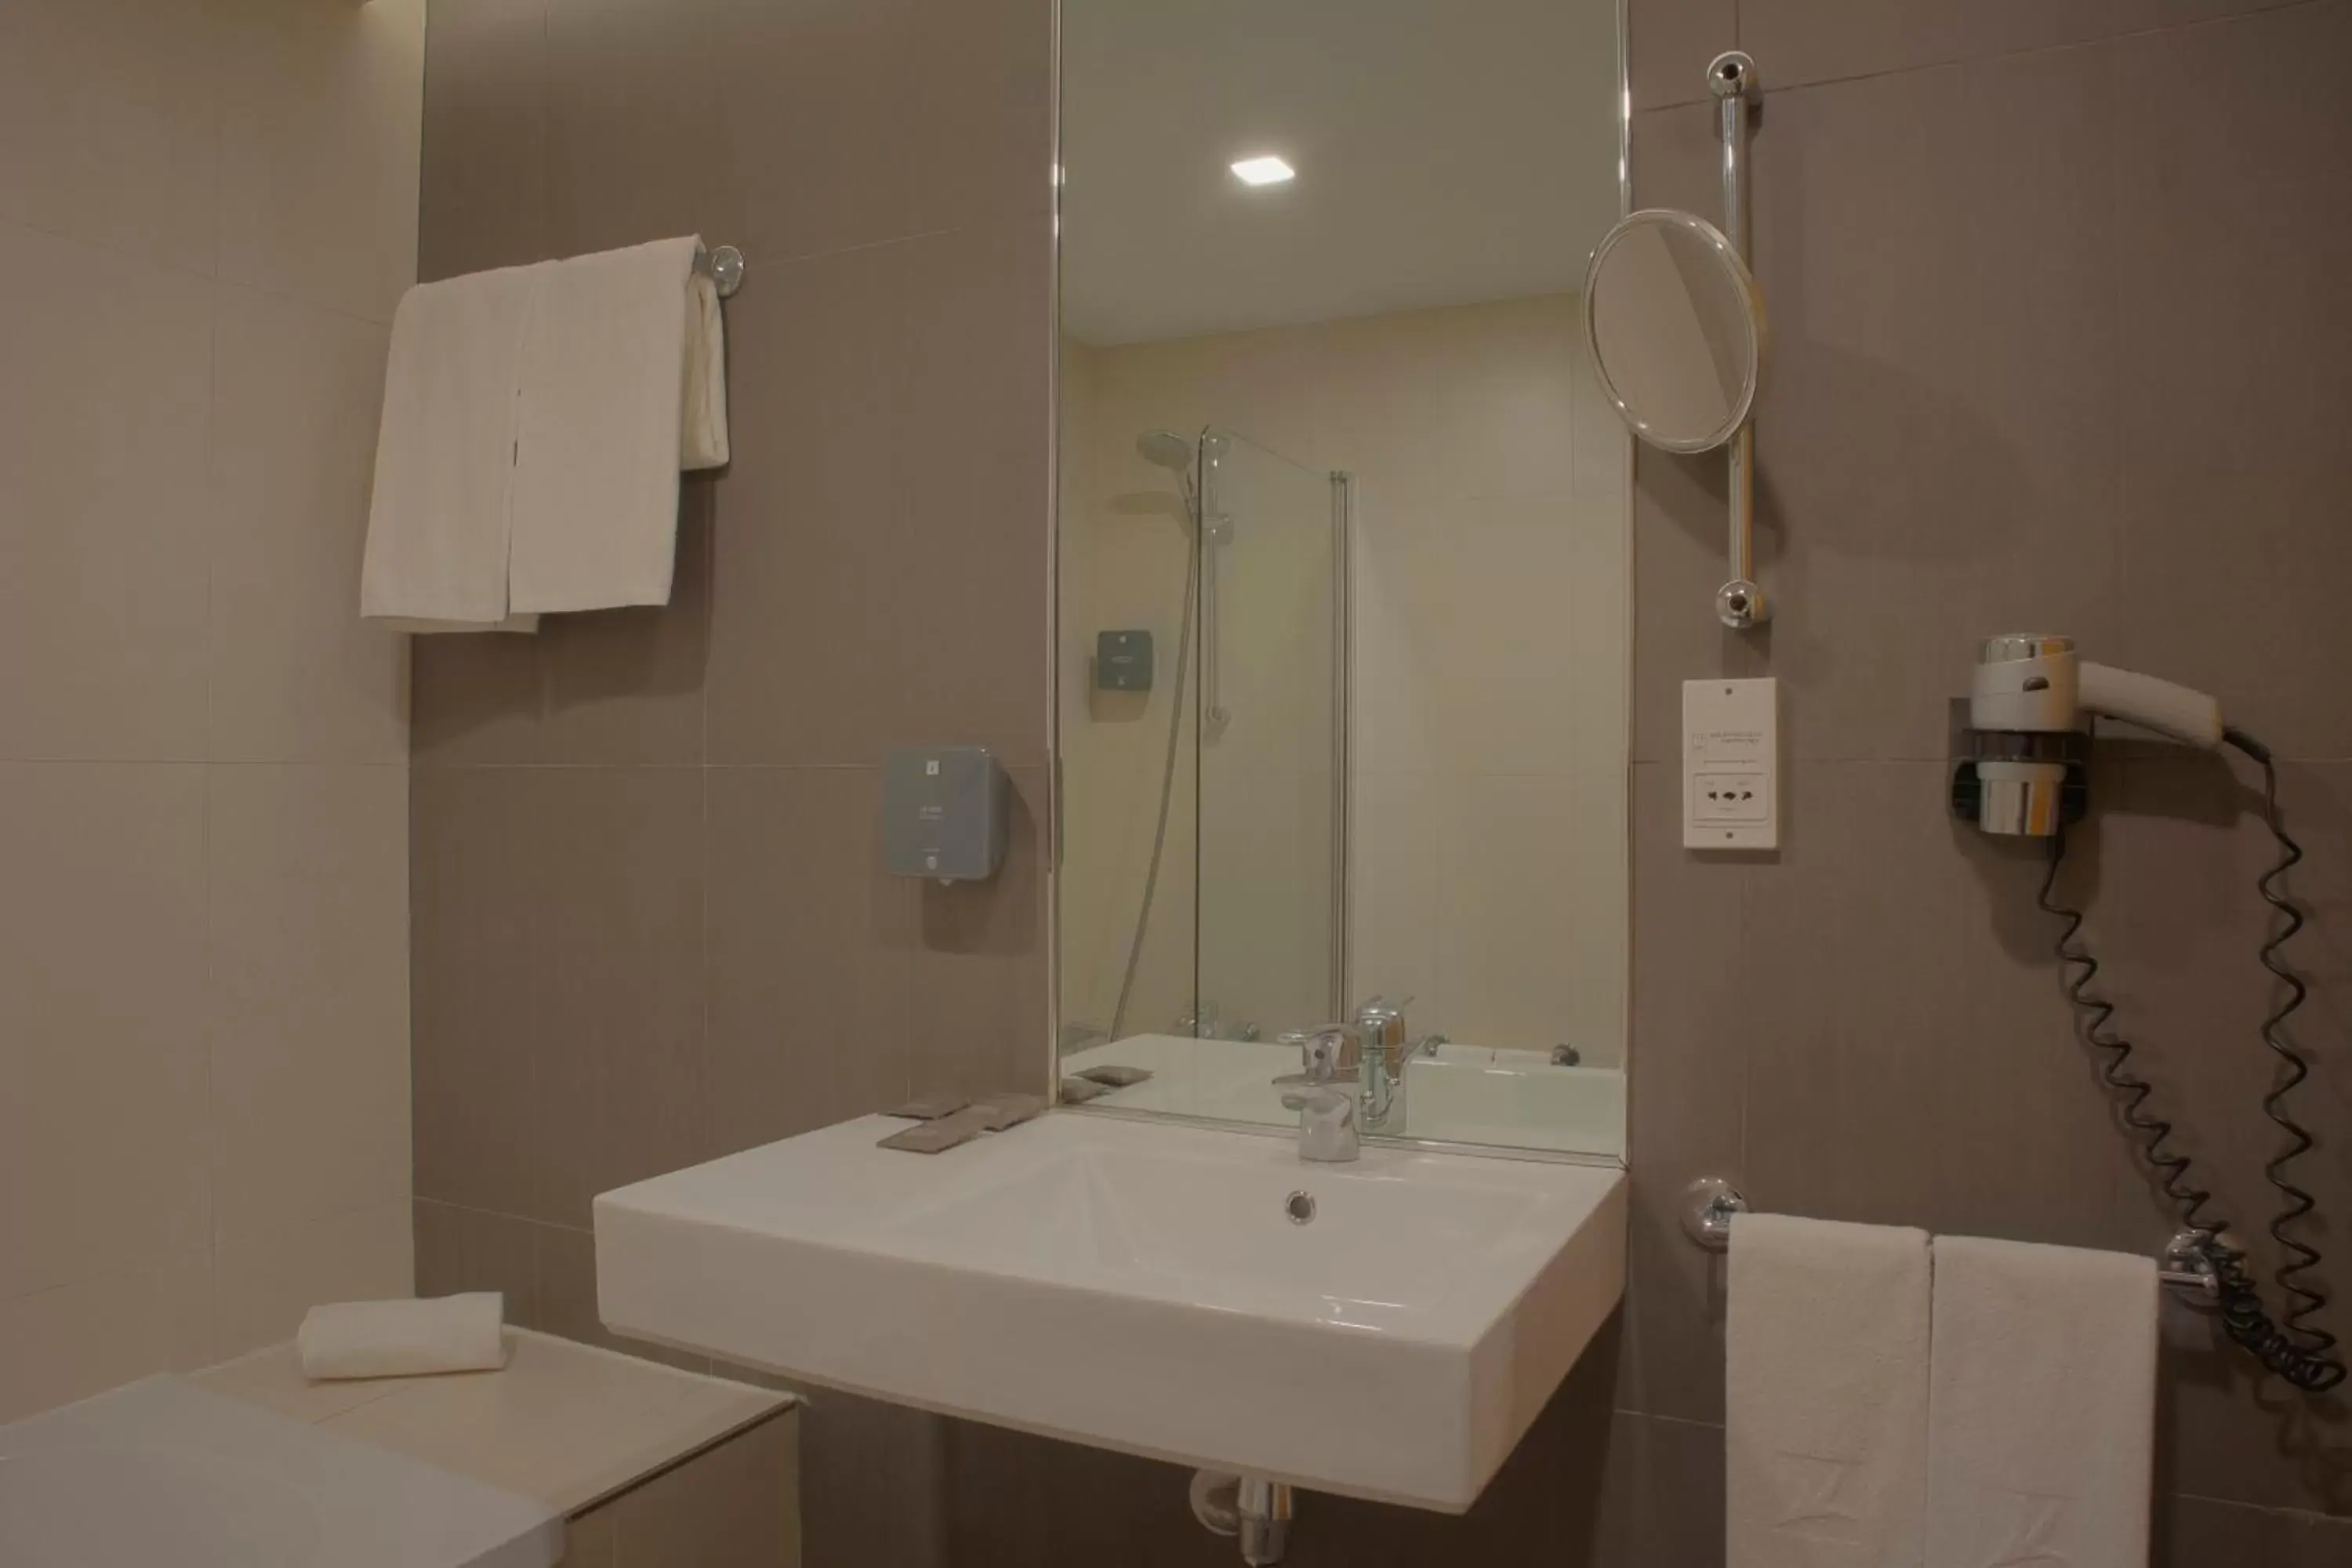 Toilet, Bathroom in SANA Reno Hotel